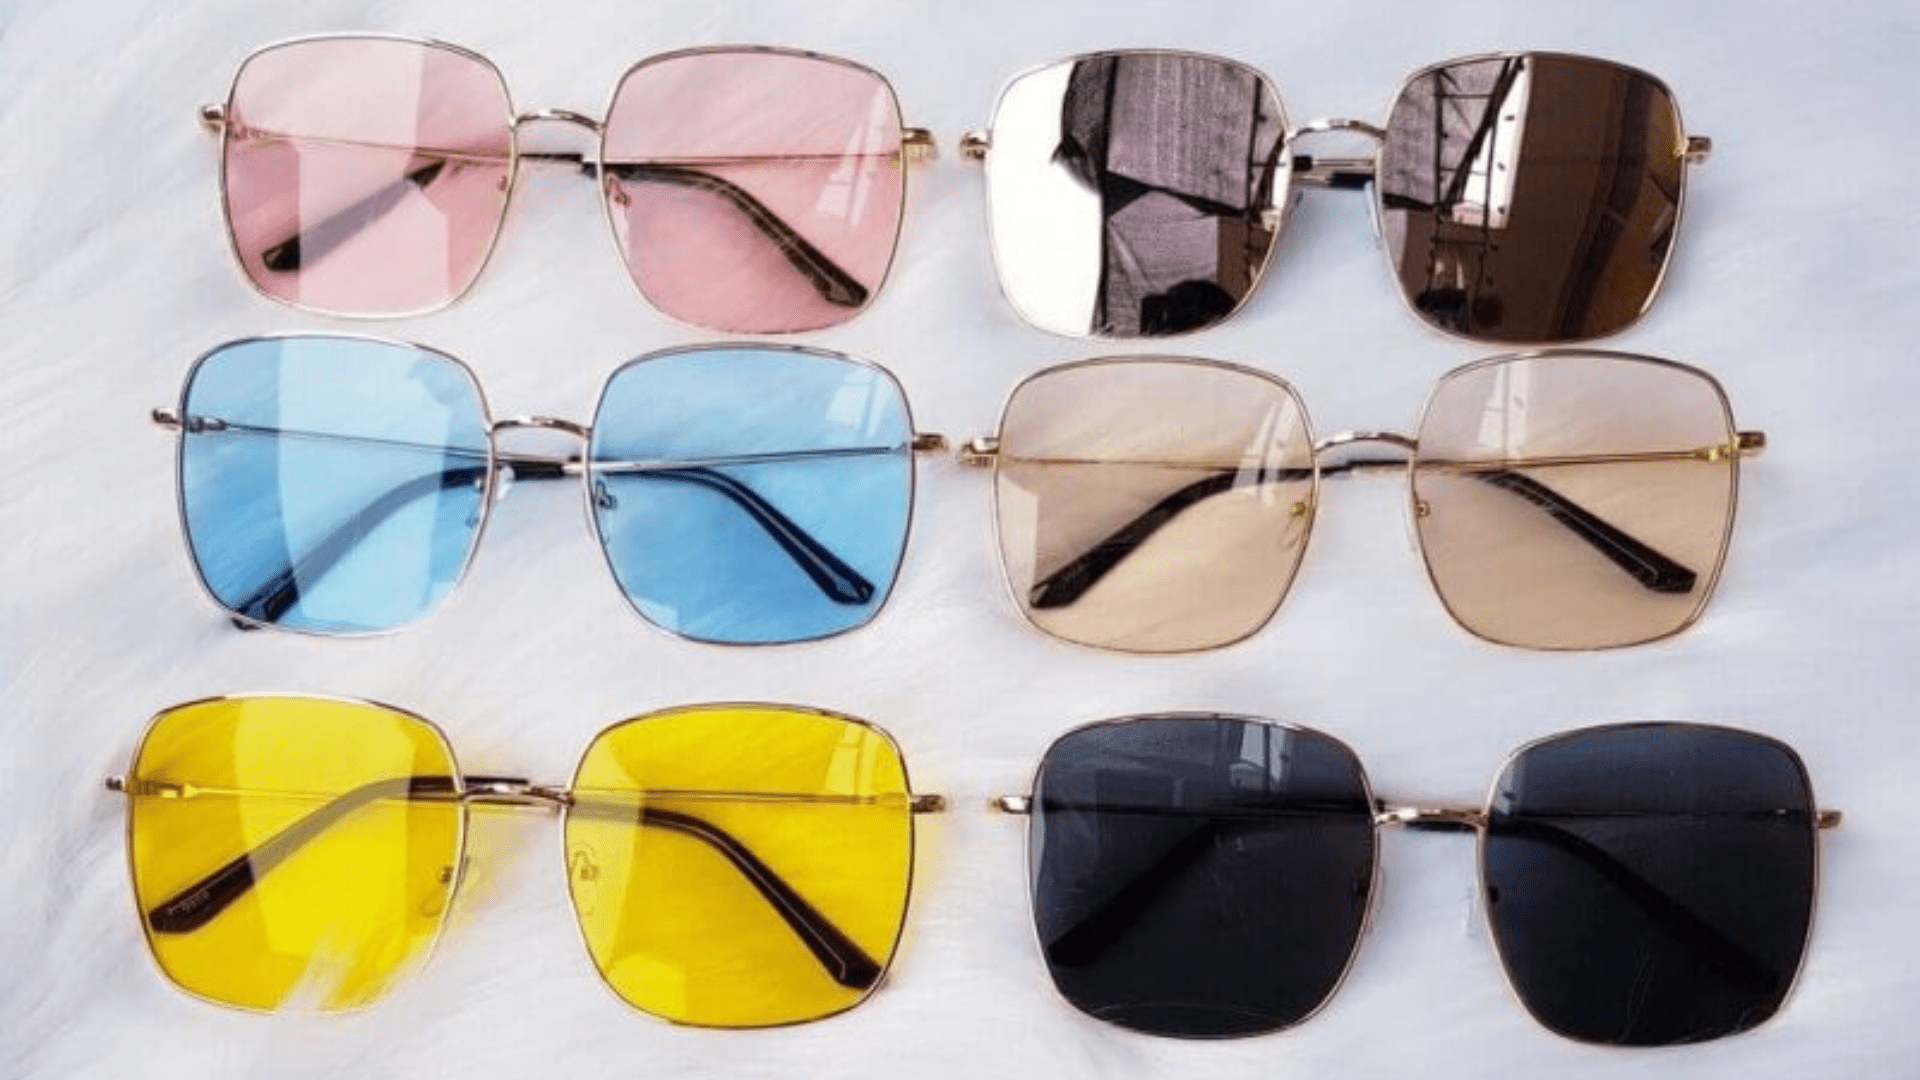 Vân Nguyễn - Cửa hàng mắt kính đẹp, giá rẻ tại Đà Nẵng